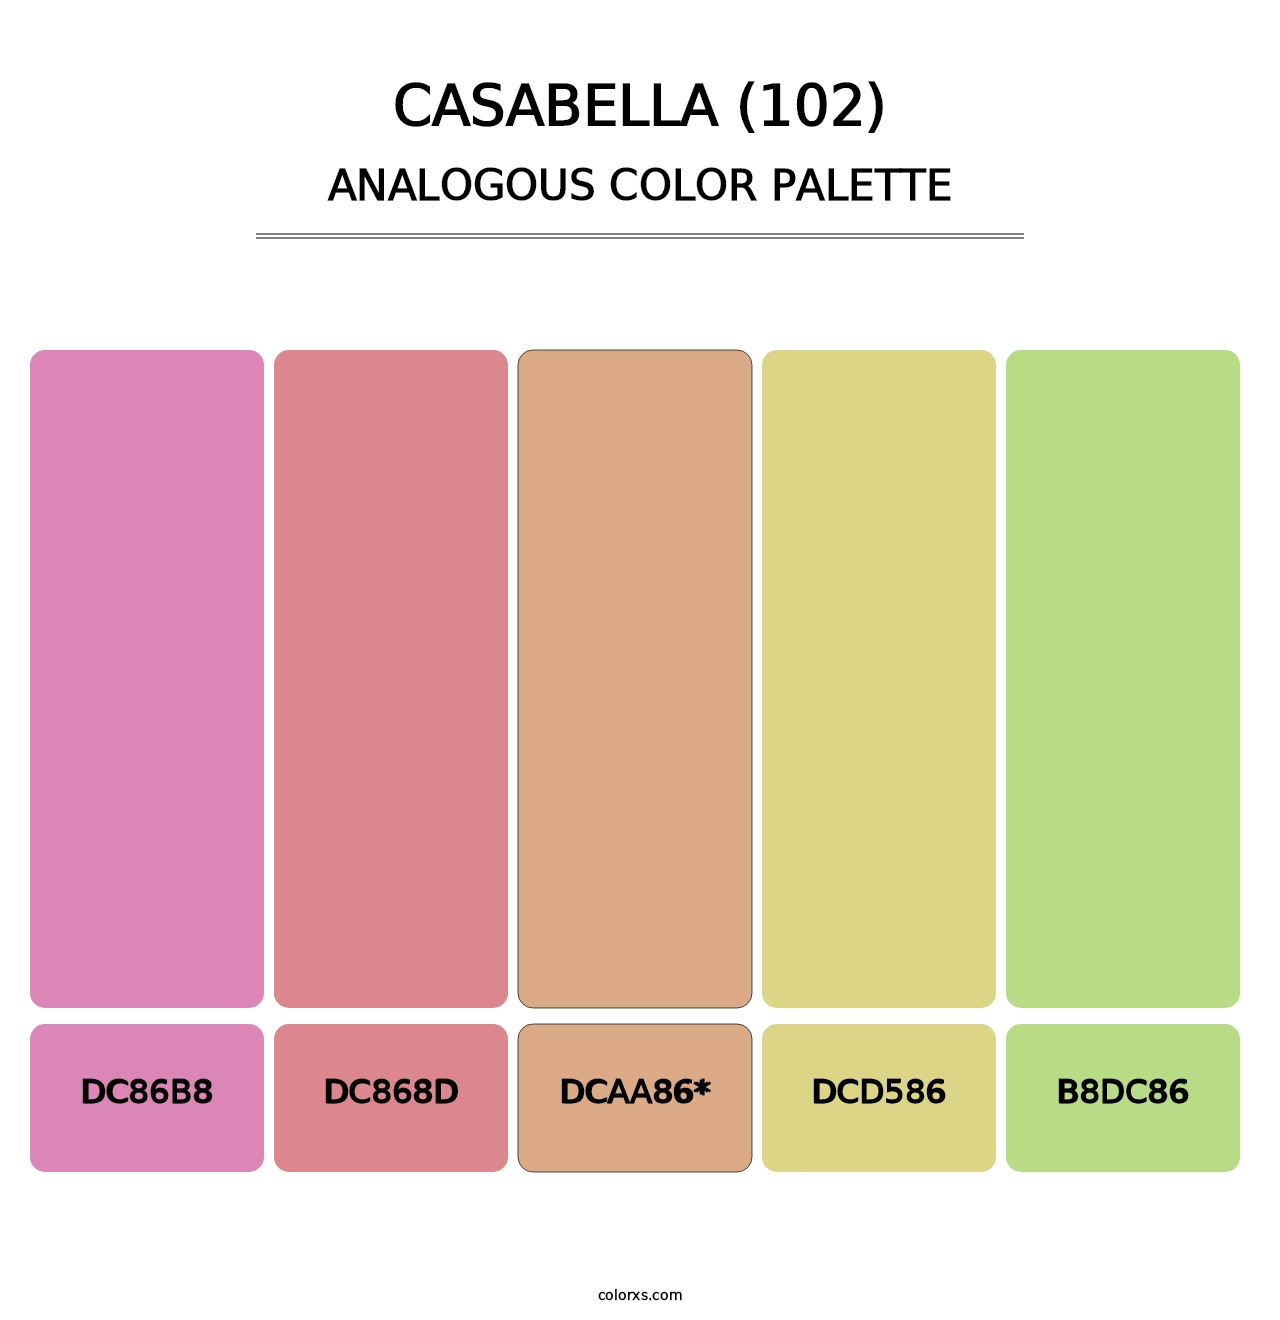 Casabella (102) - Analogous Color Palette